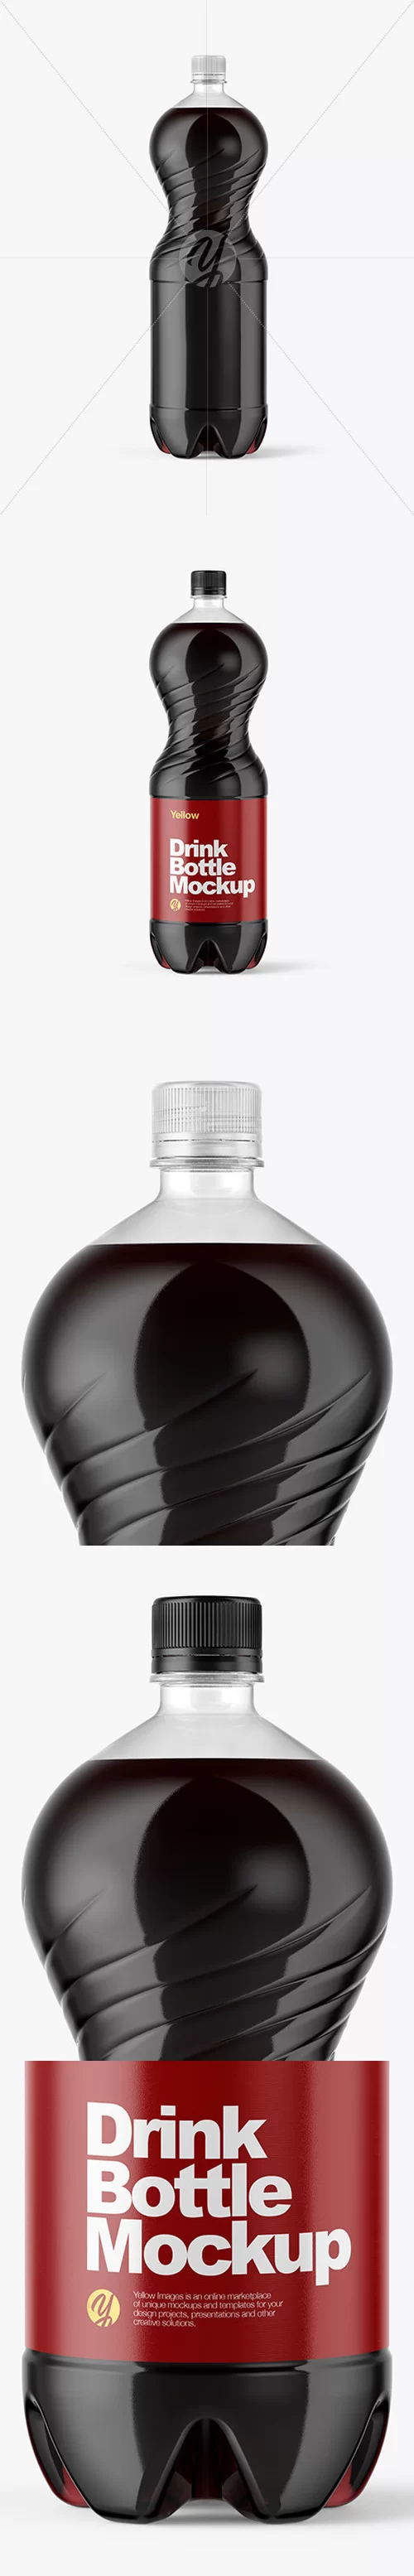 2L PET Bottle With Cola Mockup 47451 [TIF]